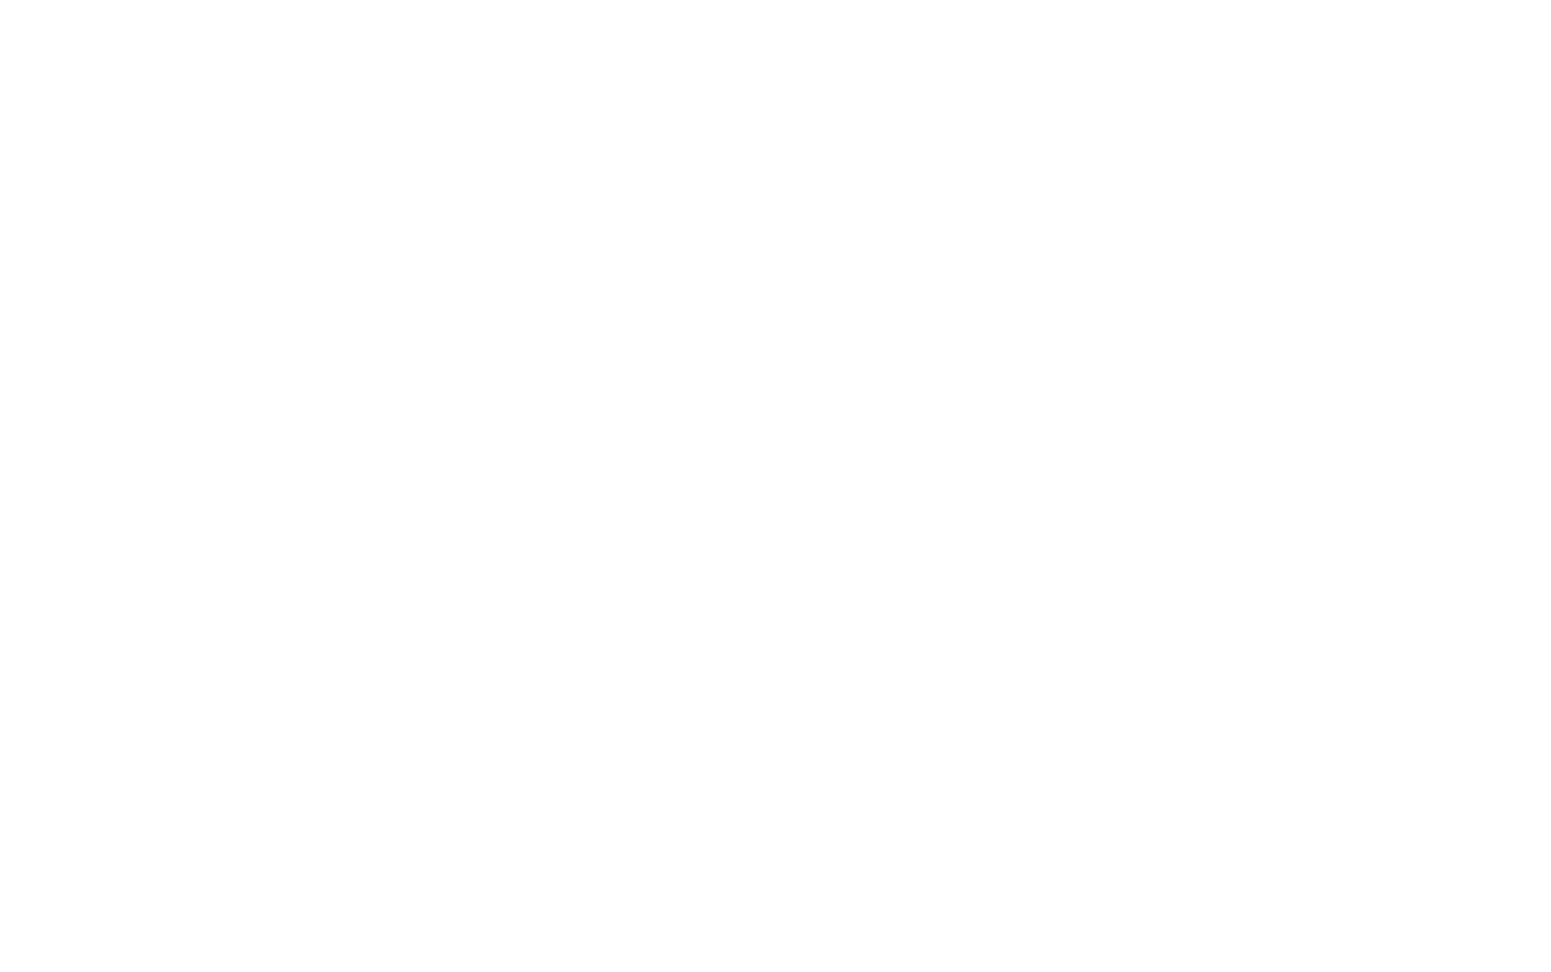 Centrais Electricas Brasileiras logo large for dark backgrounds (transparent PNG)